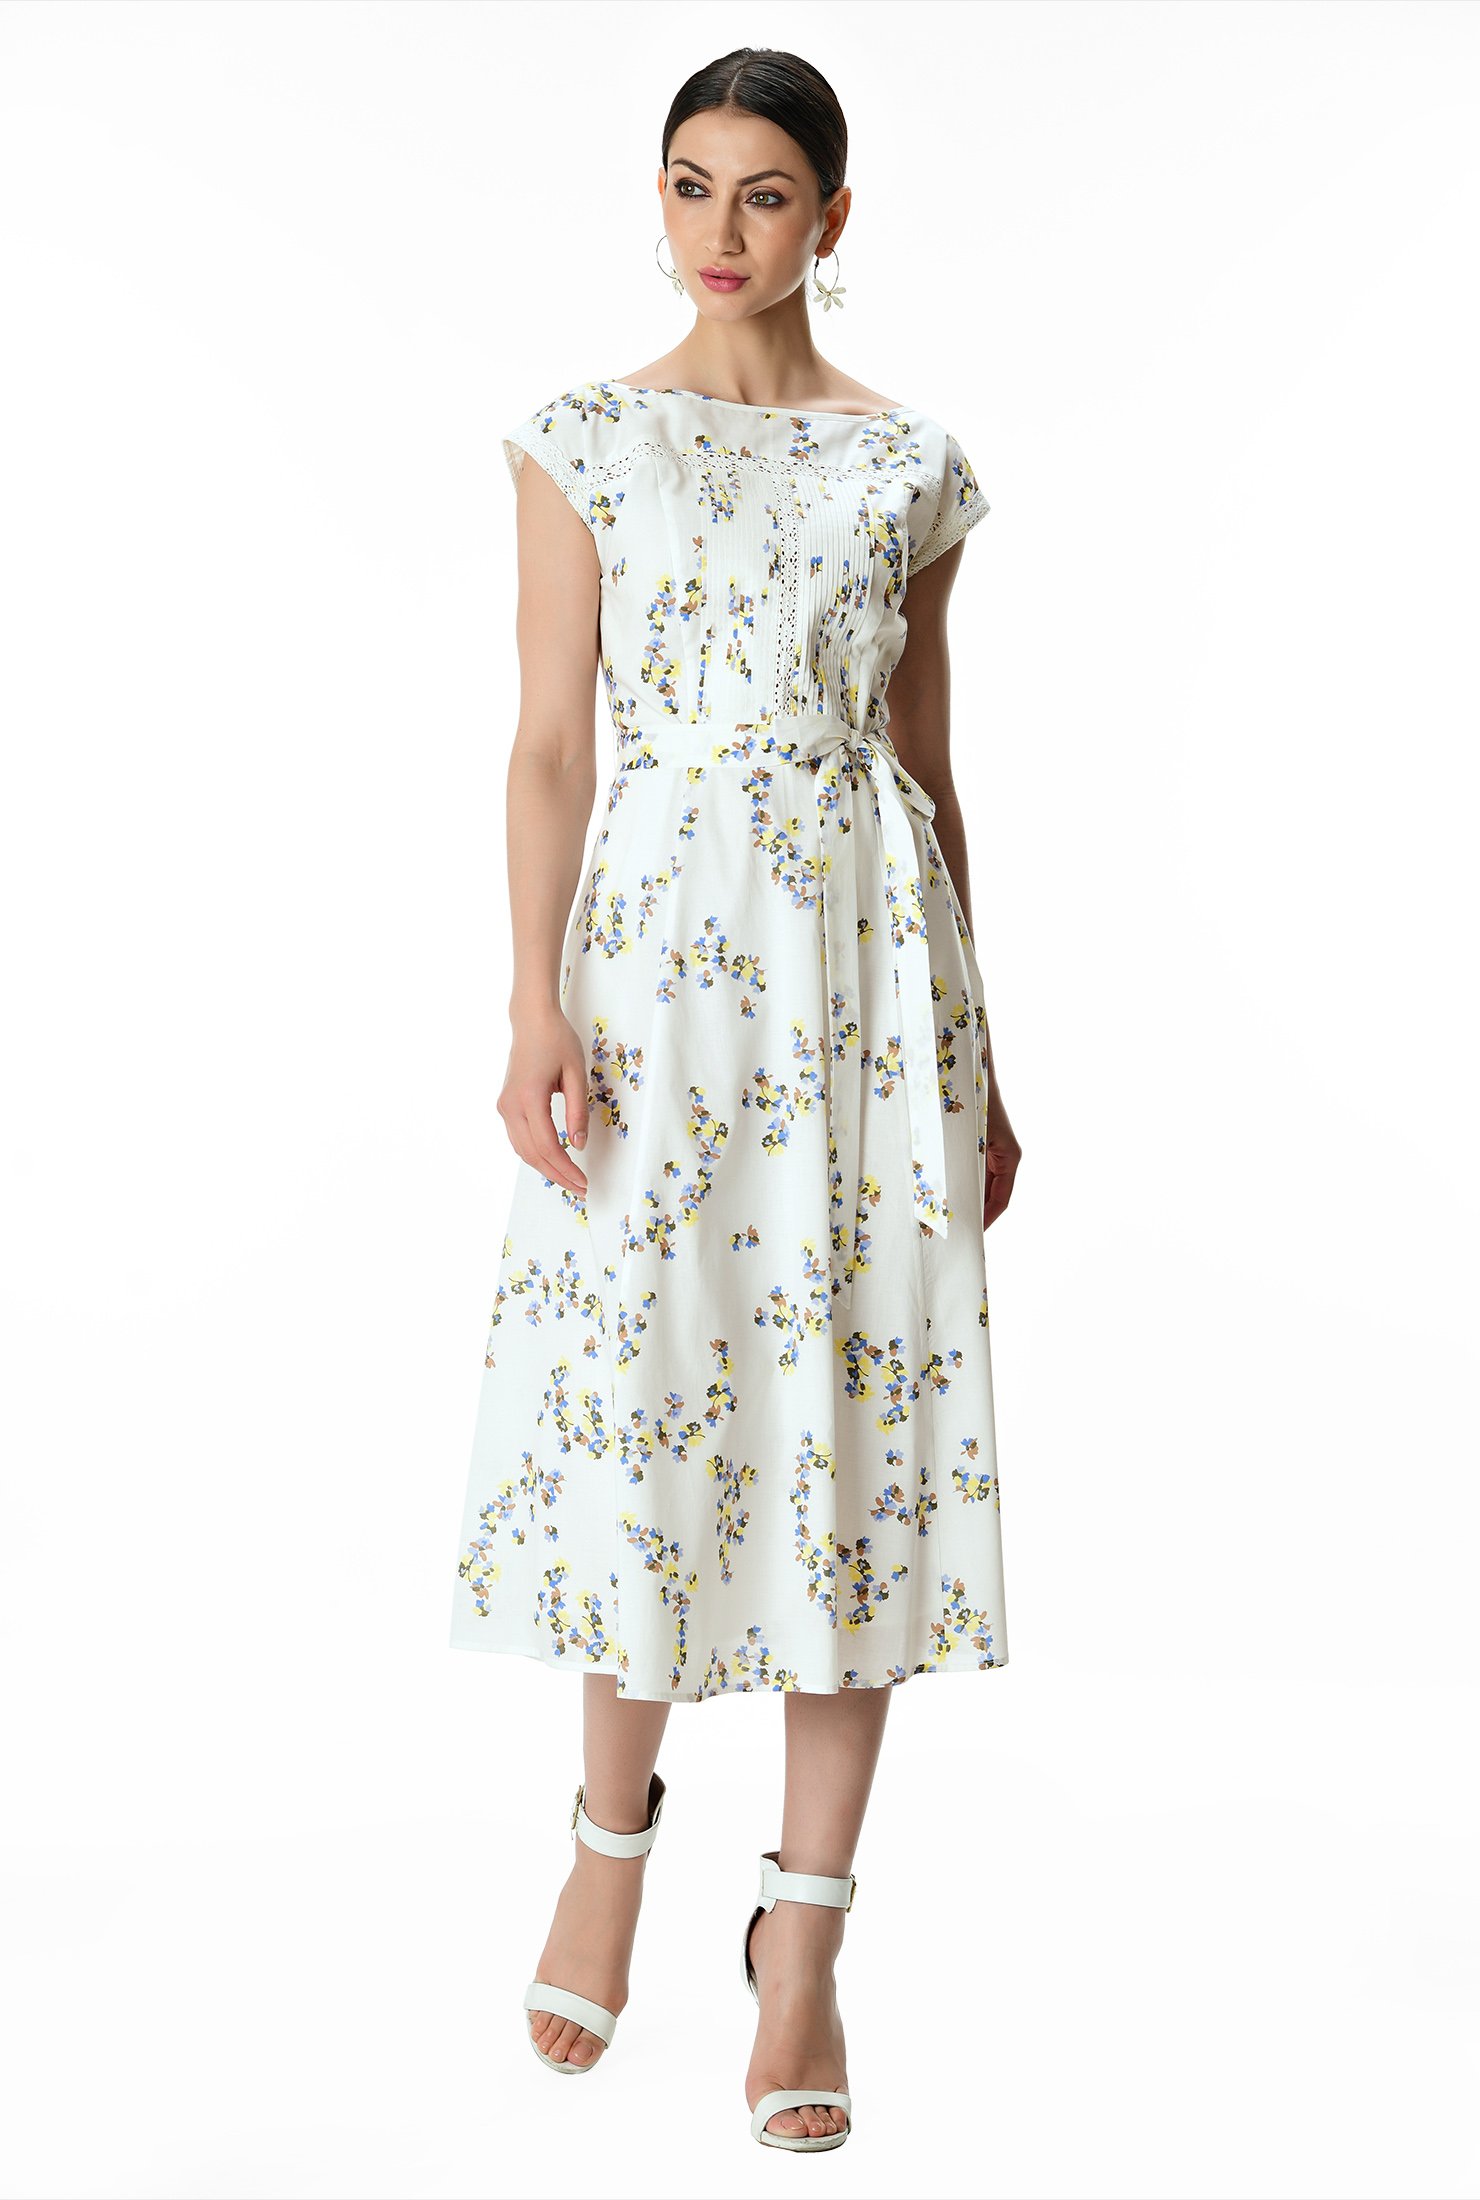 Shop Pintuck pleat lace trim floral print cotton voile dress | eShakti